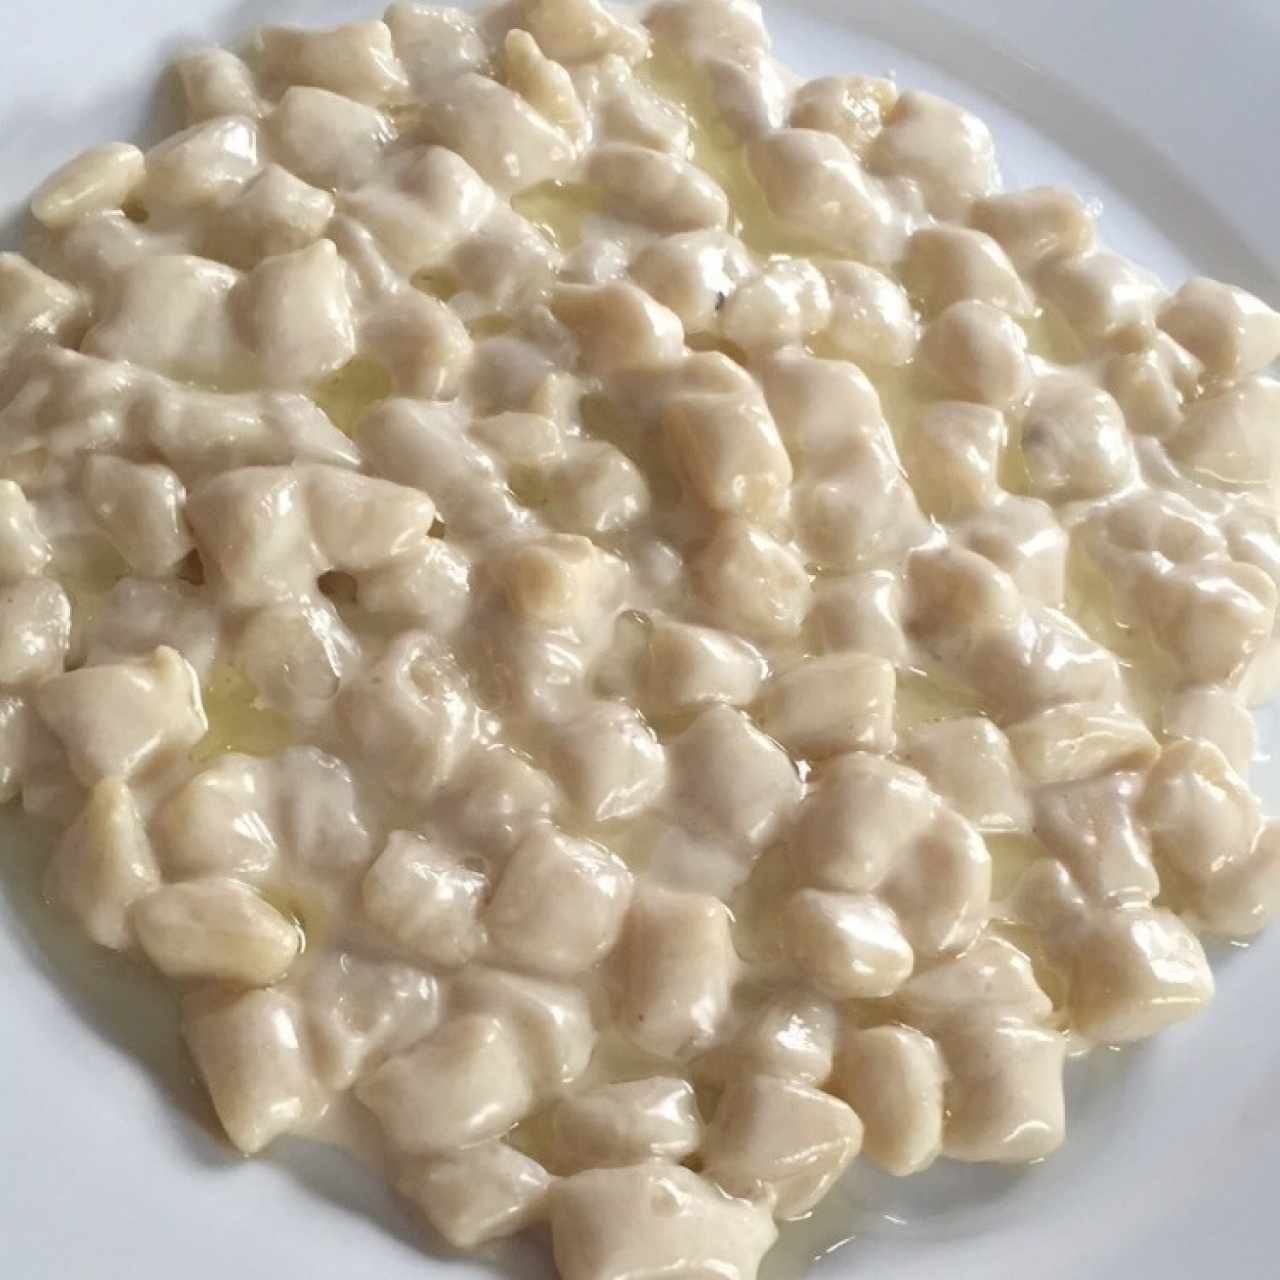 Gnocchetti di patate con crema di formaggio e profumo di tartufo